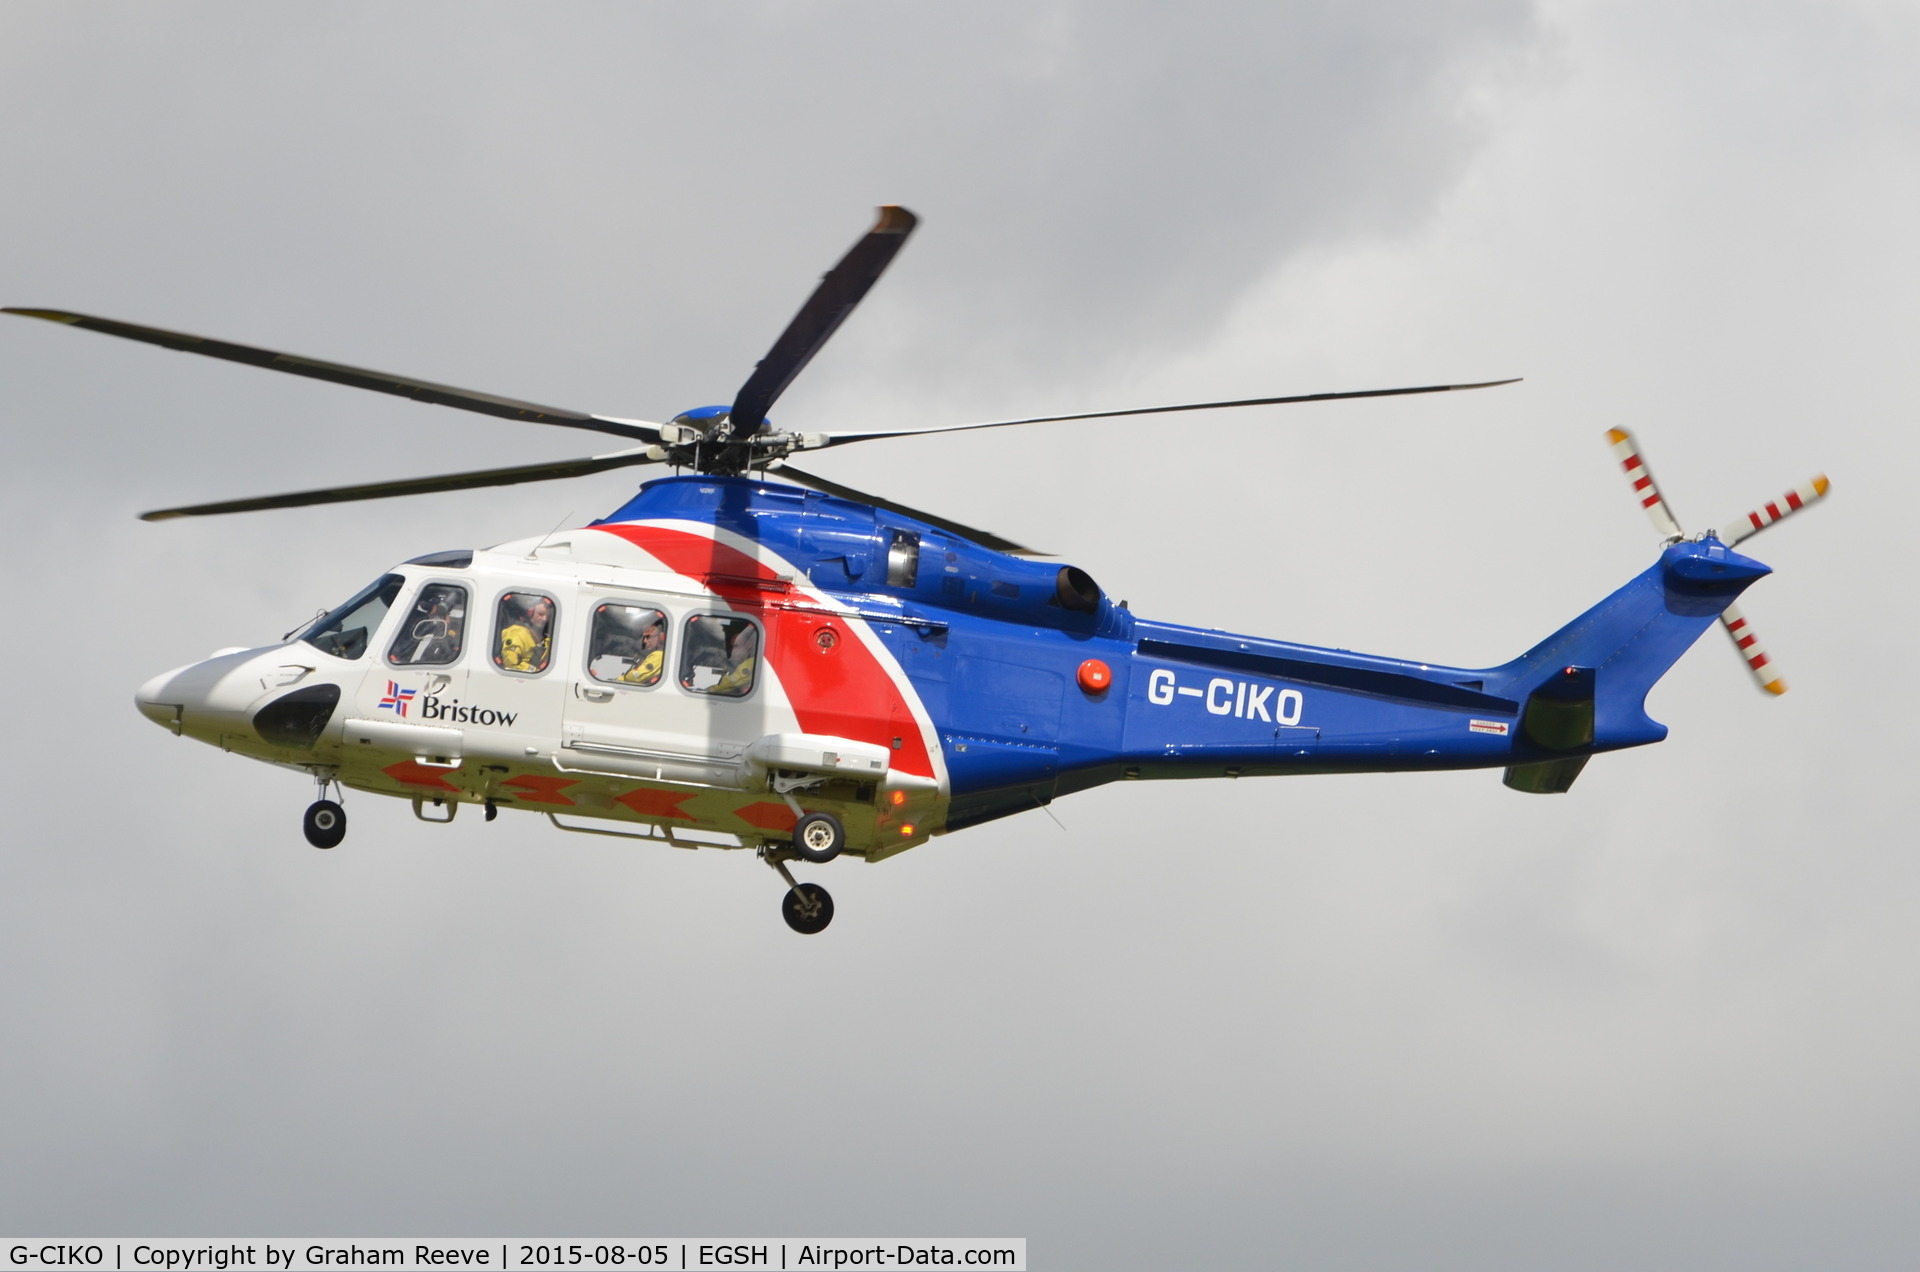 G-CIKO, 2014 AgustaWestland AW-139 C/N 41378, Landing at Norwich.